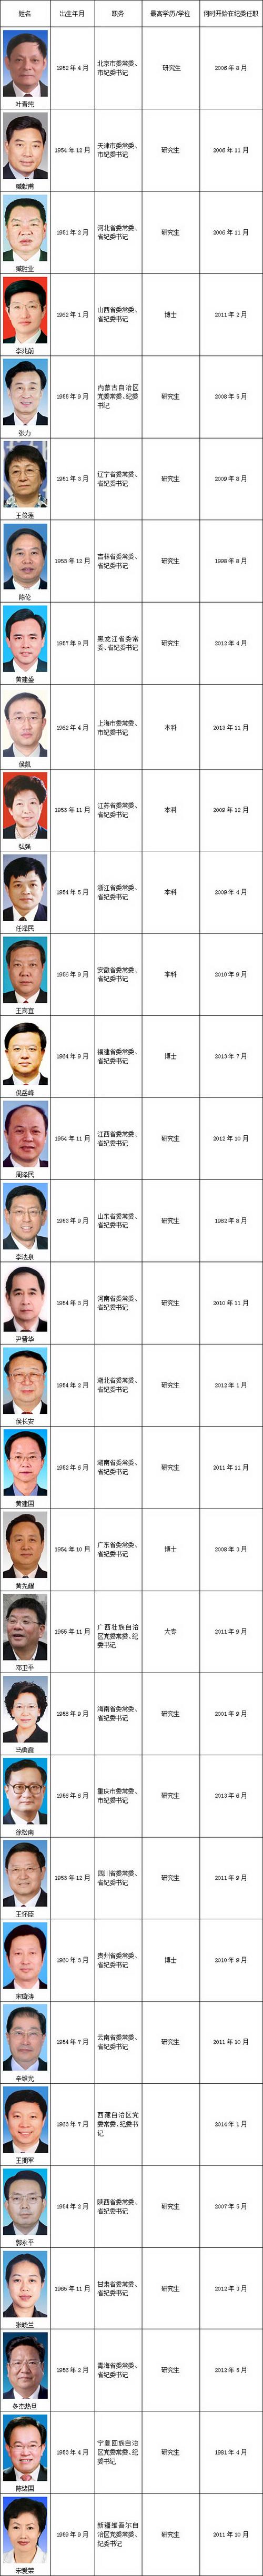 详情见下表:近日,湖北省委明确规定纪委书记在党委中的排位,不论资历